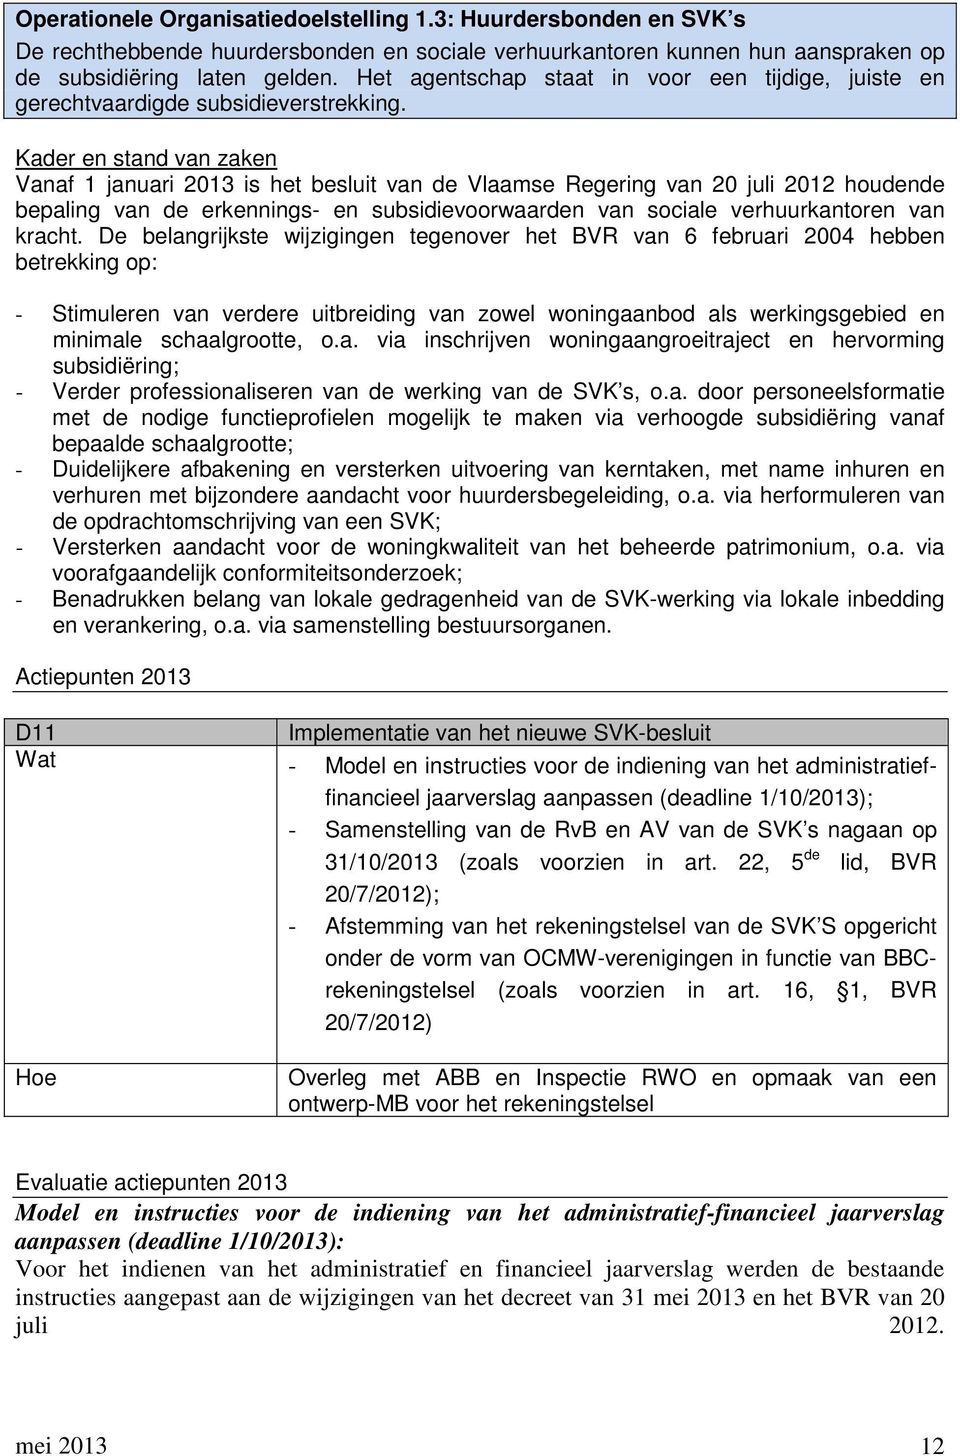 Kader en stand van zaken Vanaf 1 januari 2013 is het besluit van de Vlaamse Regering van 20 juli 2012 houdende bepaling van de erkennings- en subsidievoorwaarden van sociale verhuurkantoren van